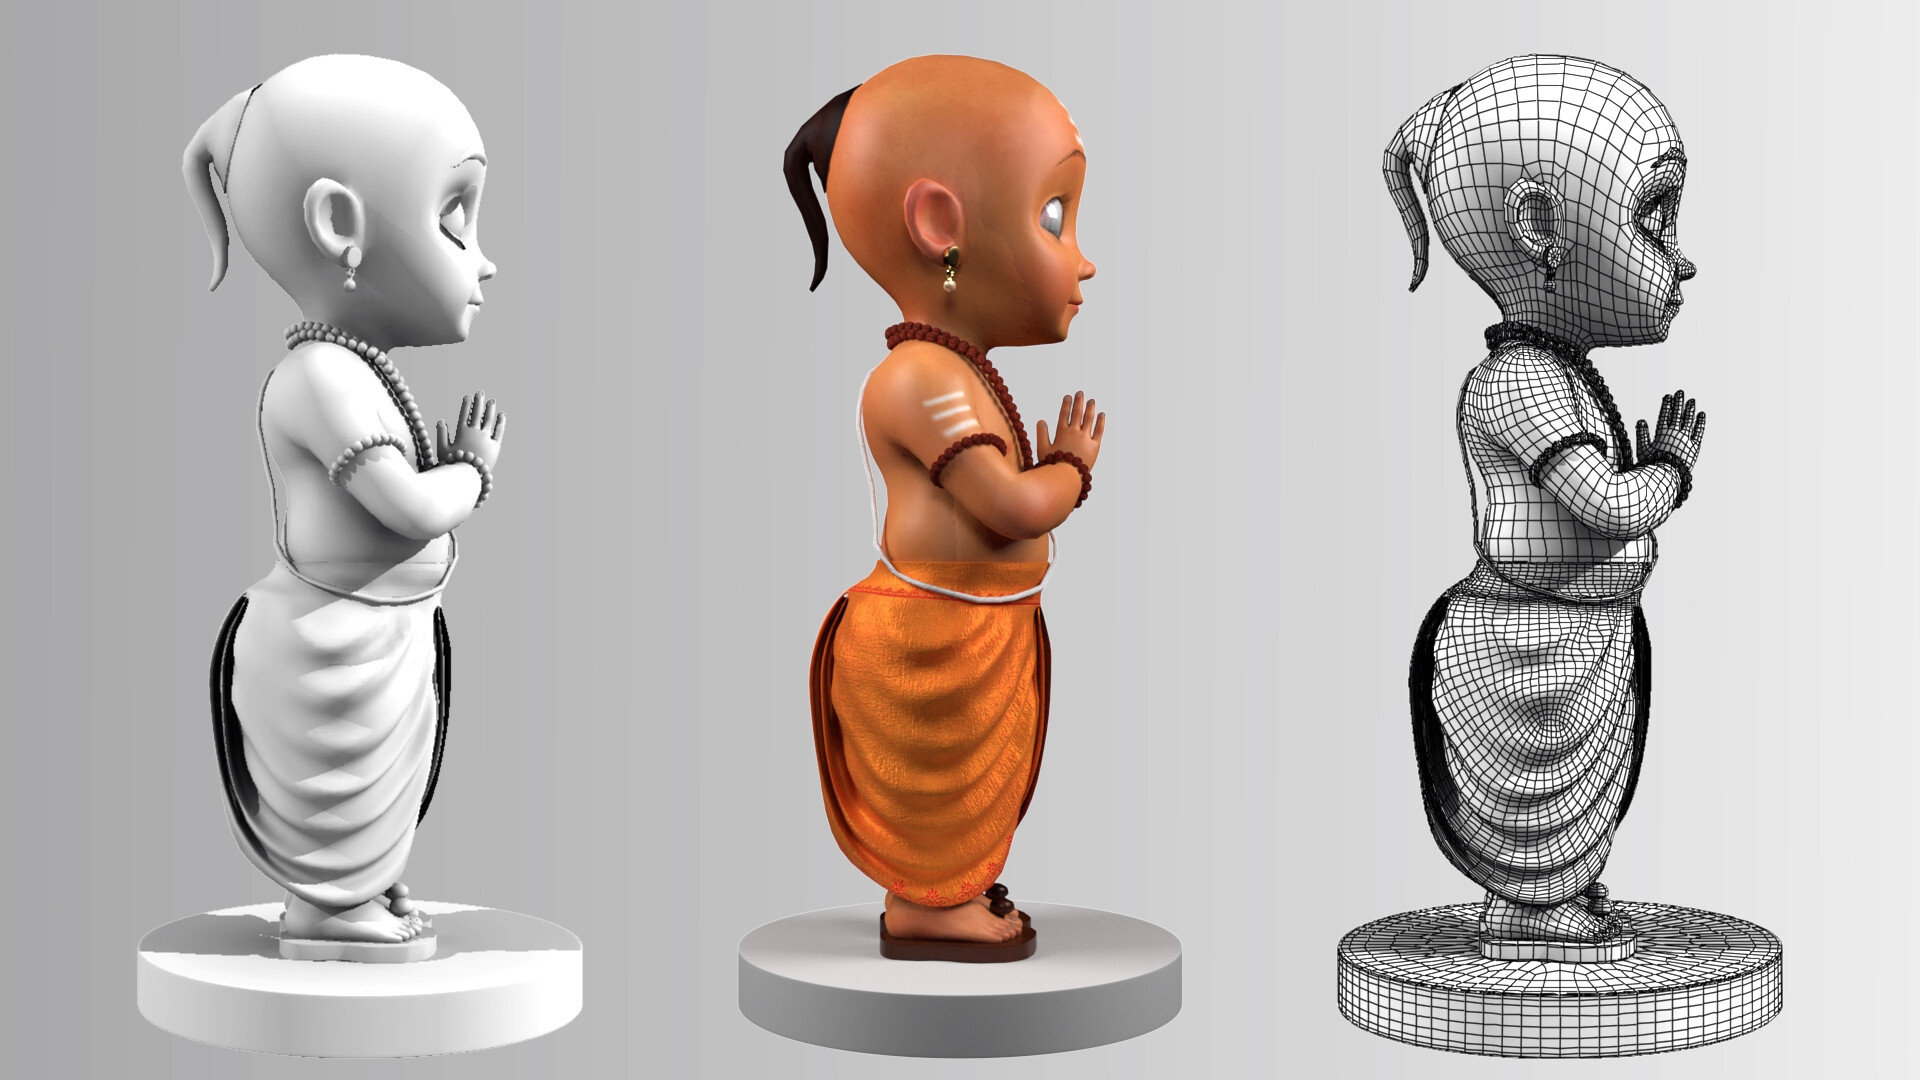 ArtStation - 3D Baby Cartoon Concept Character